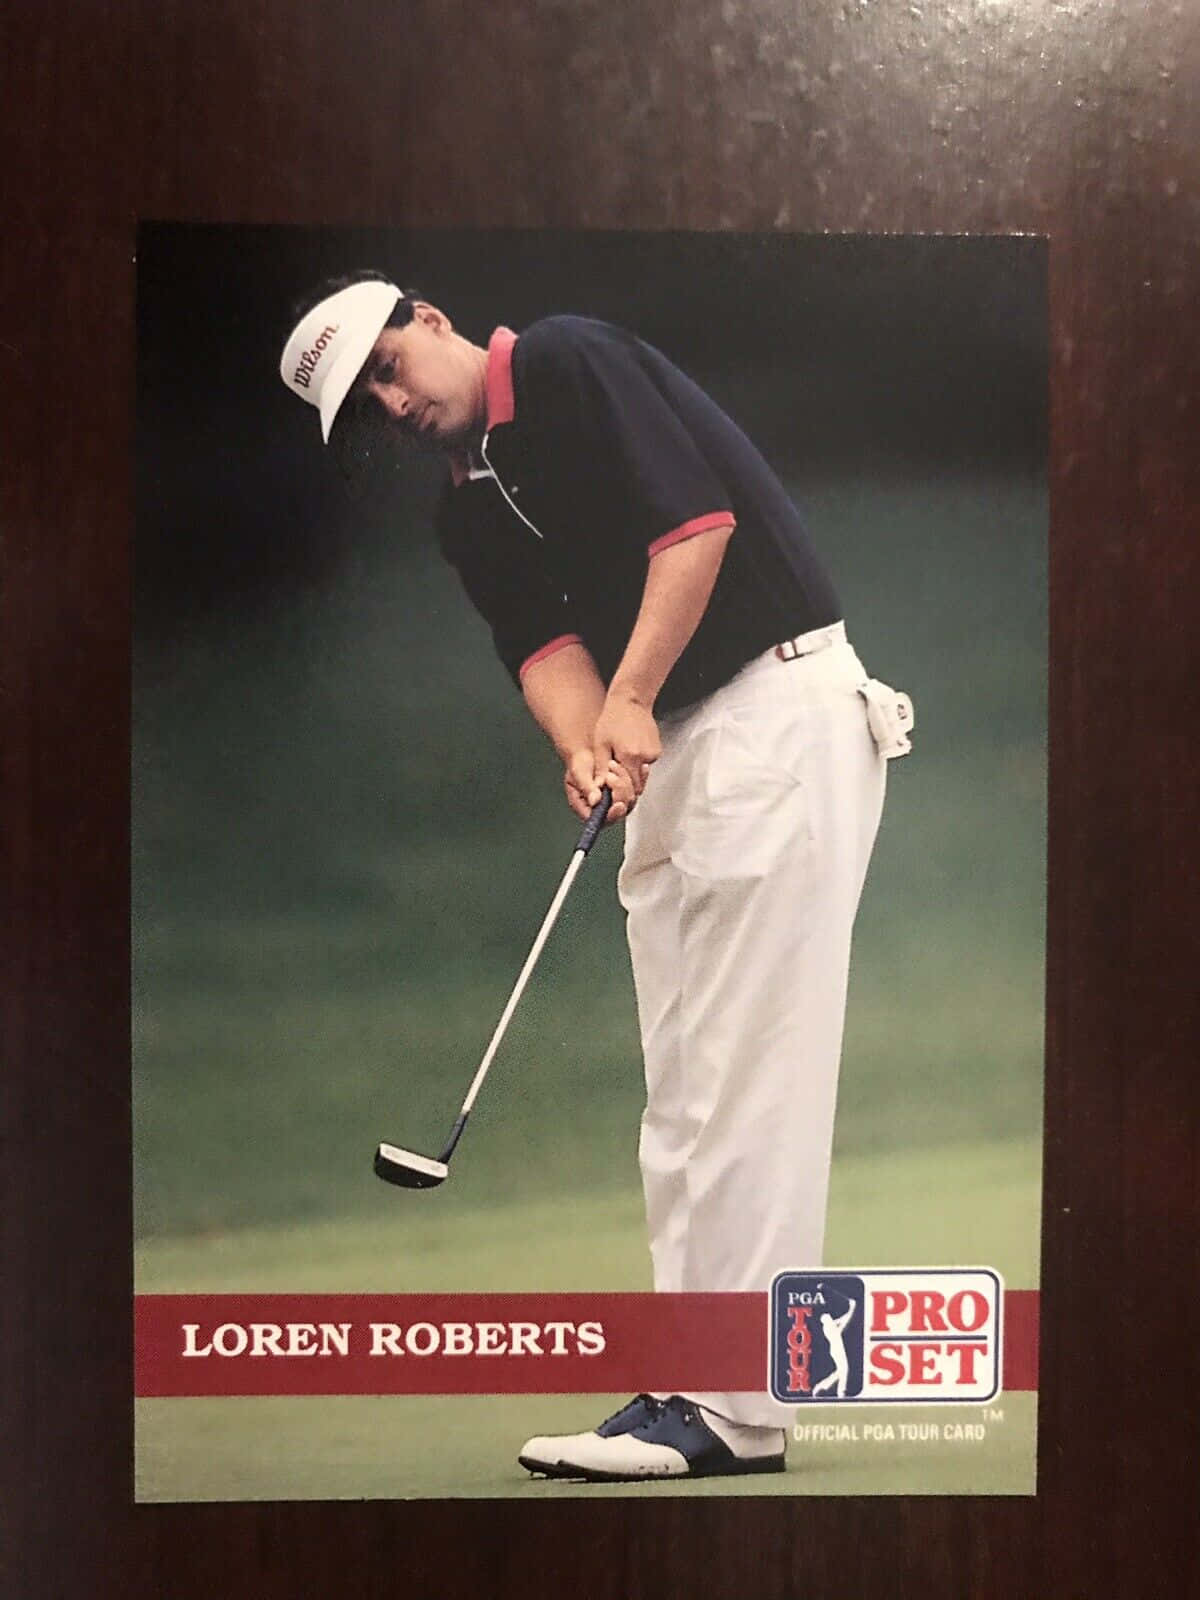 Lorenroberts Pga Tour Card - Loren Roberts Pga Tour-kortet Wallpaper